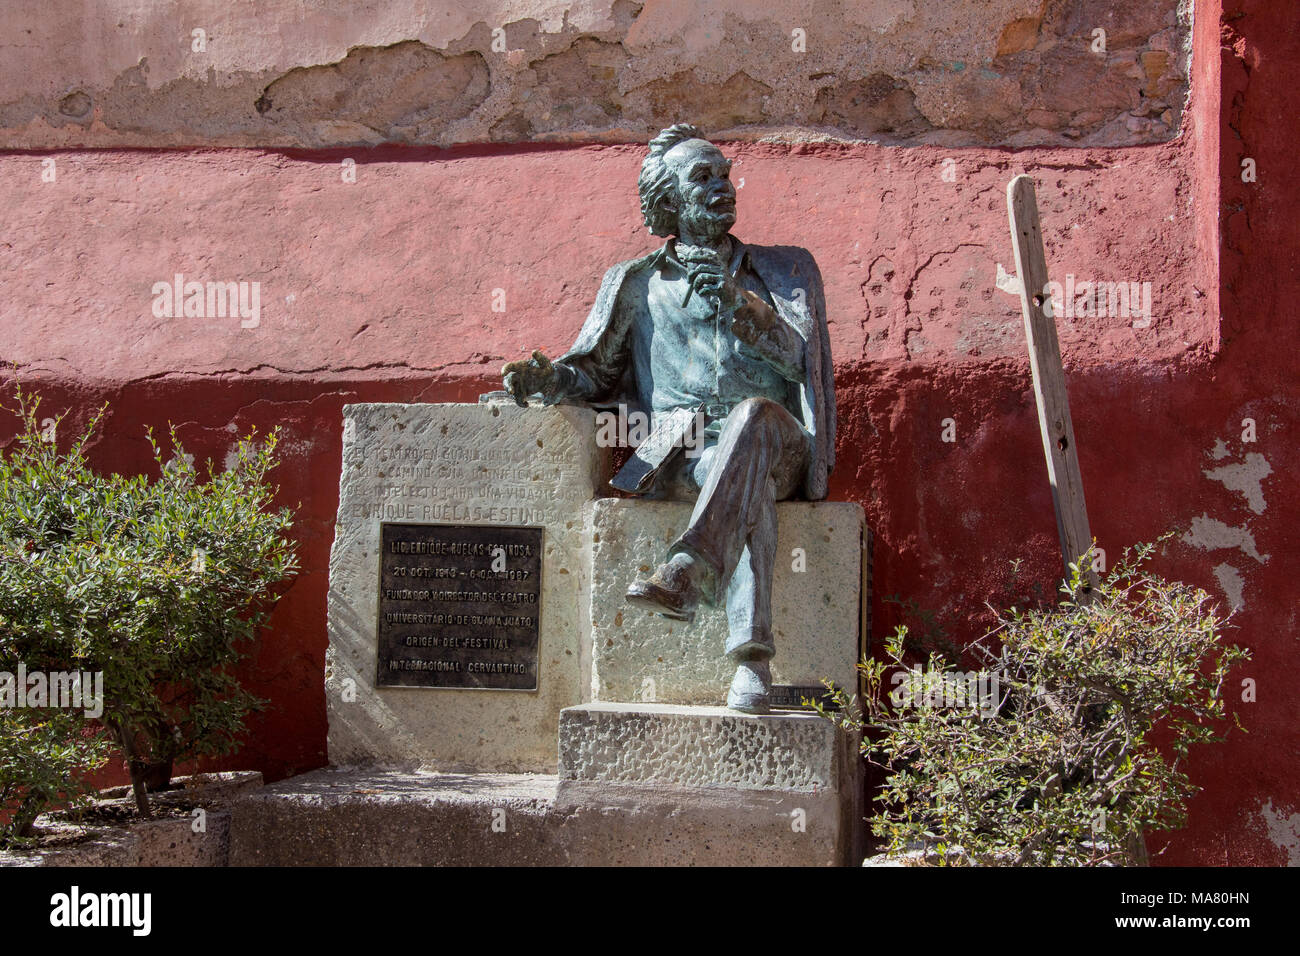 Sculpture d'Enrique Ruelas Espinosa, fondateur de Cervantes annuel Festival, Guanajuato, Mexique Banque D'Images